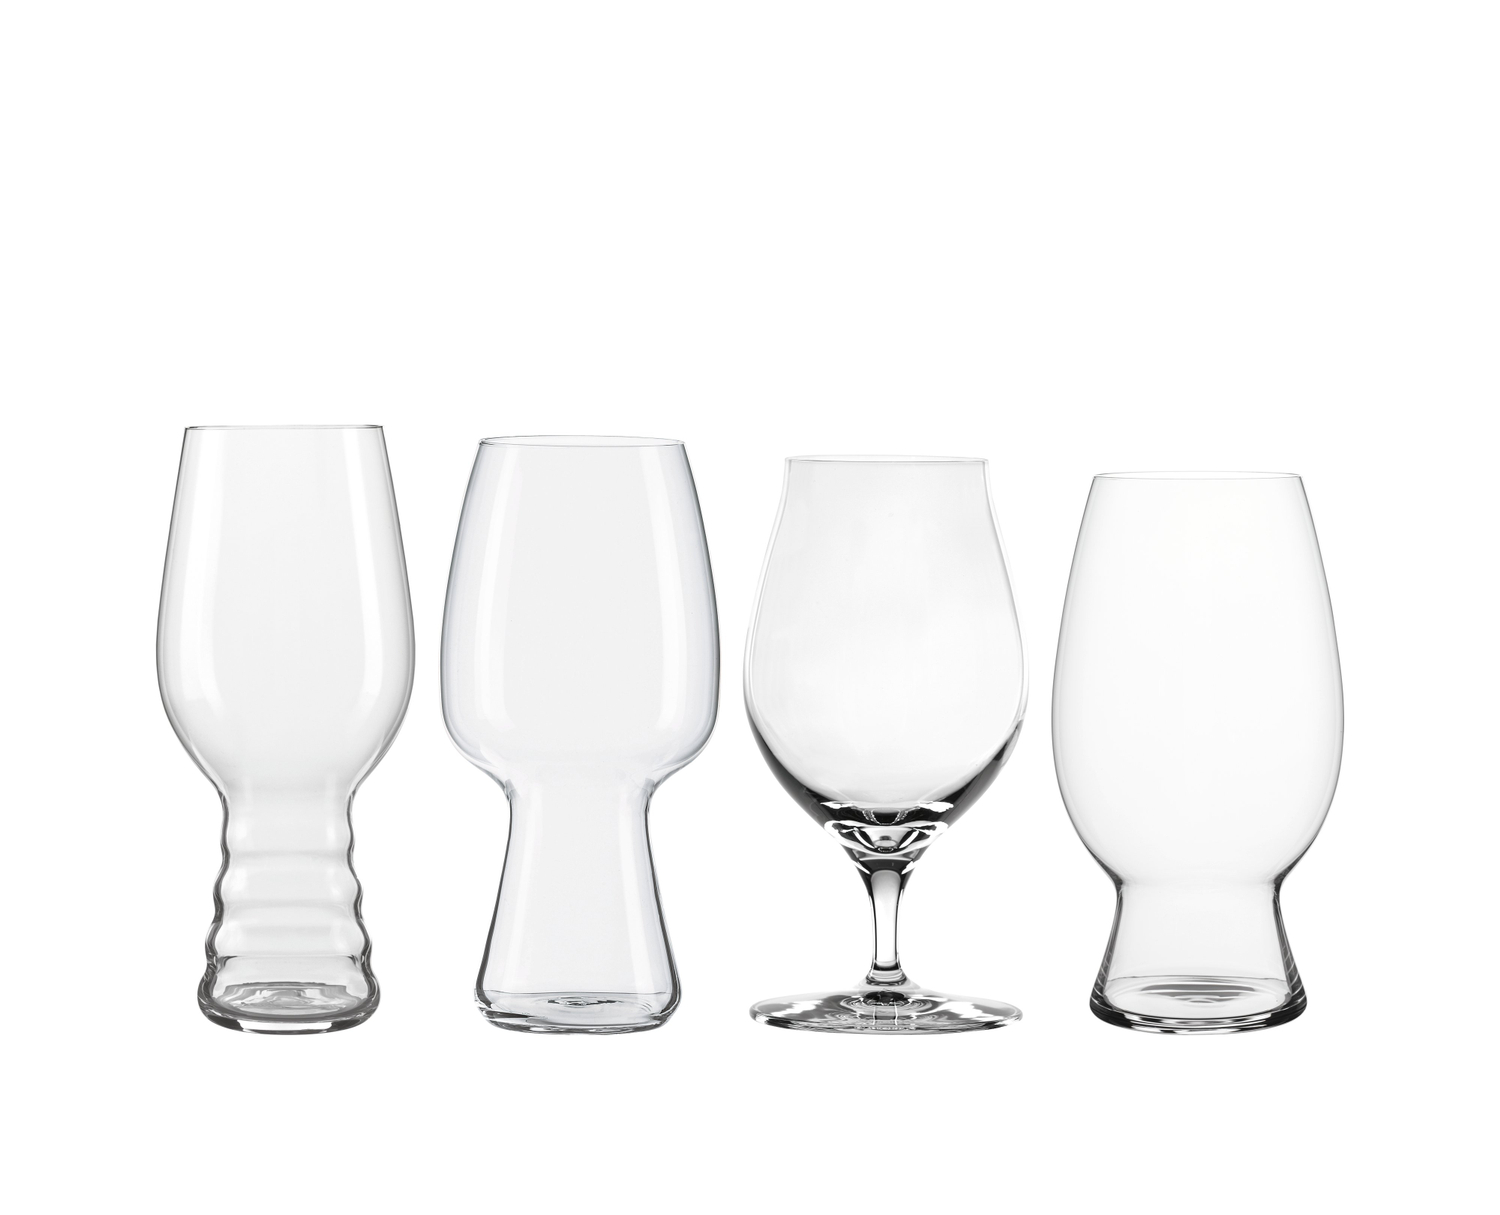 Spiegelau Craft Beer Glasses Tasting Kit (set of 4)